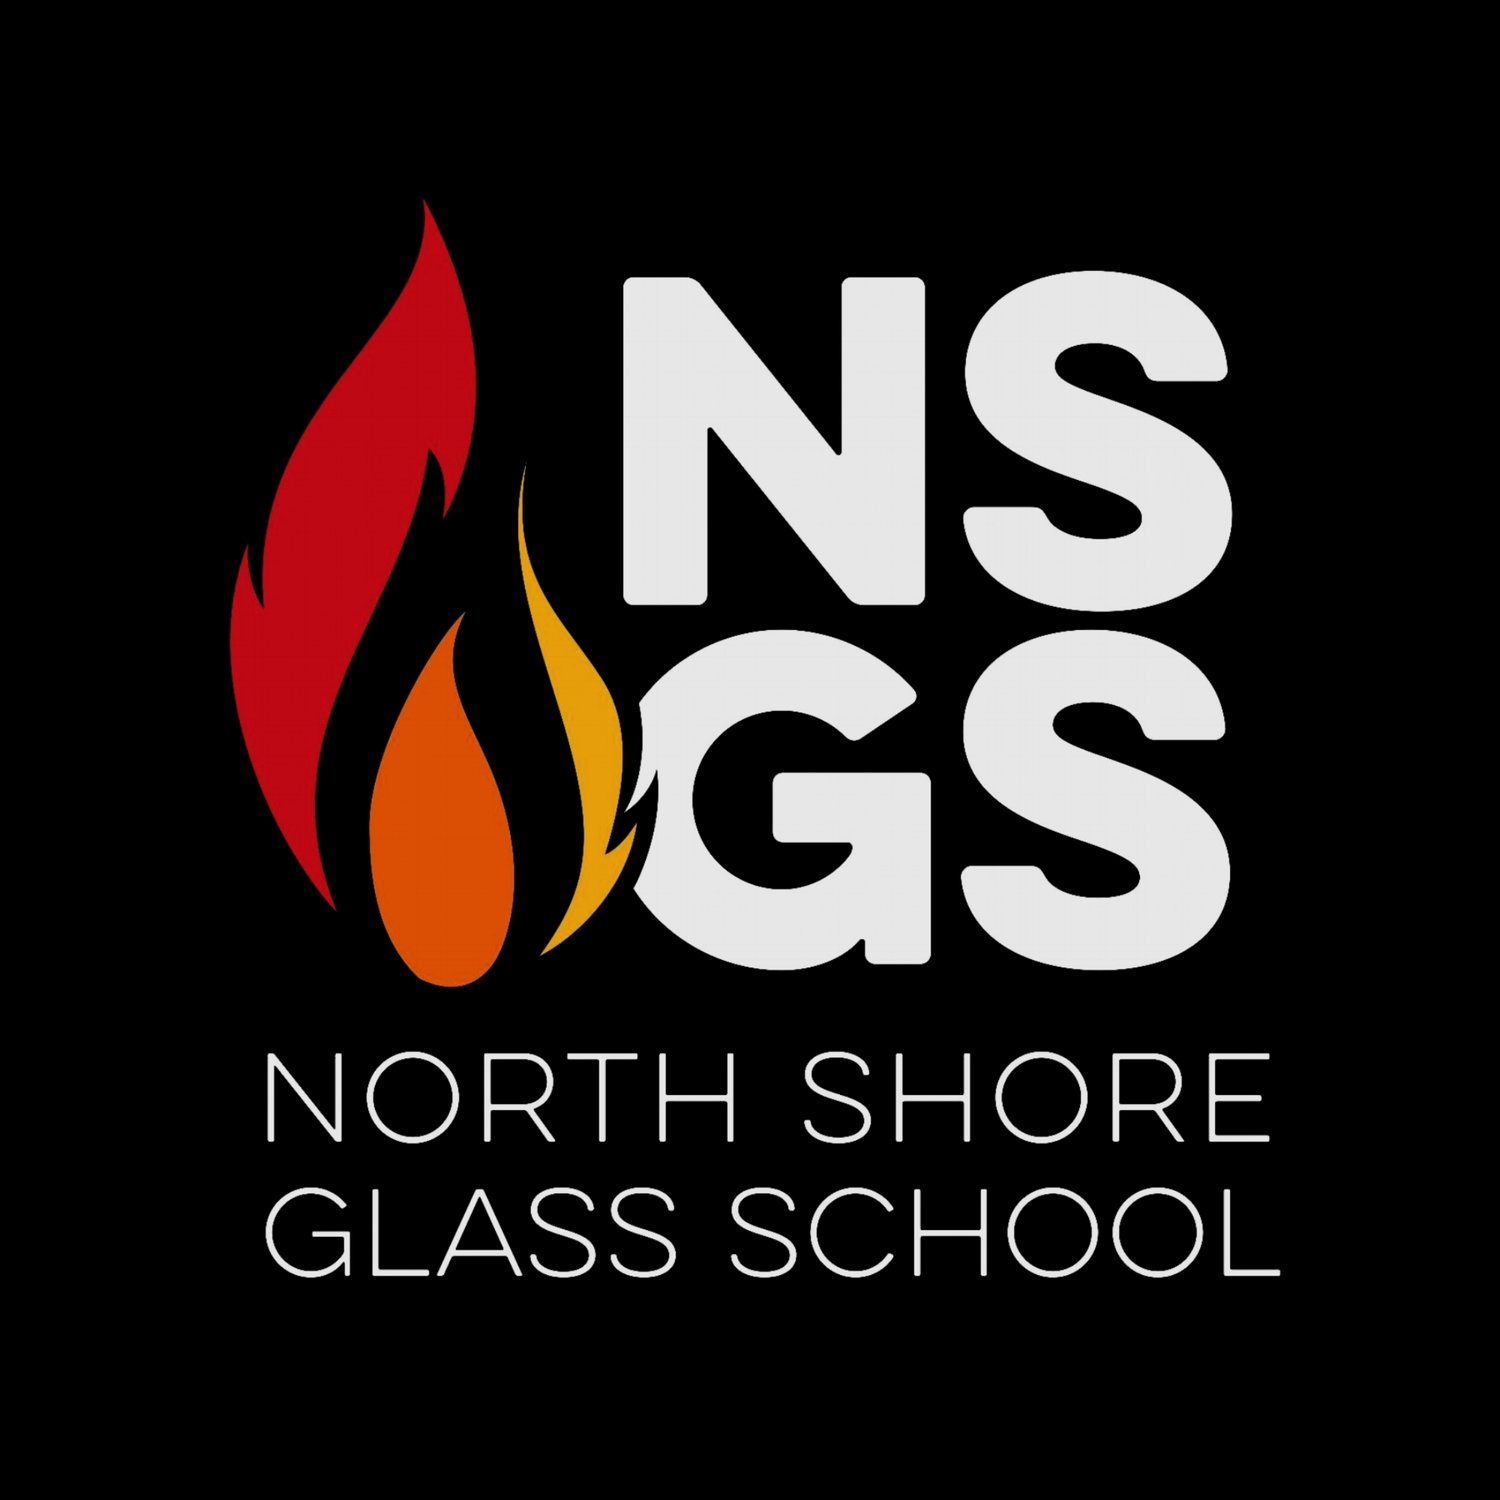 NORTH SHORE GLASS SCHOOL